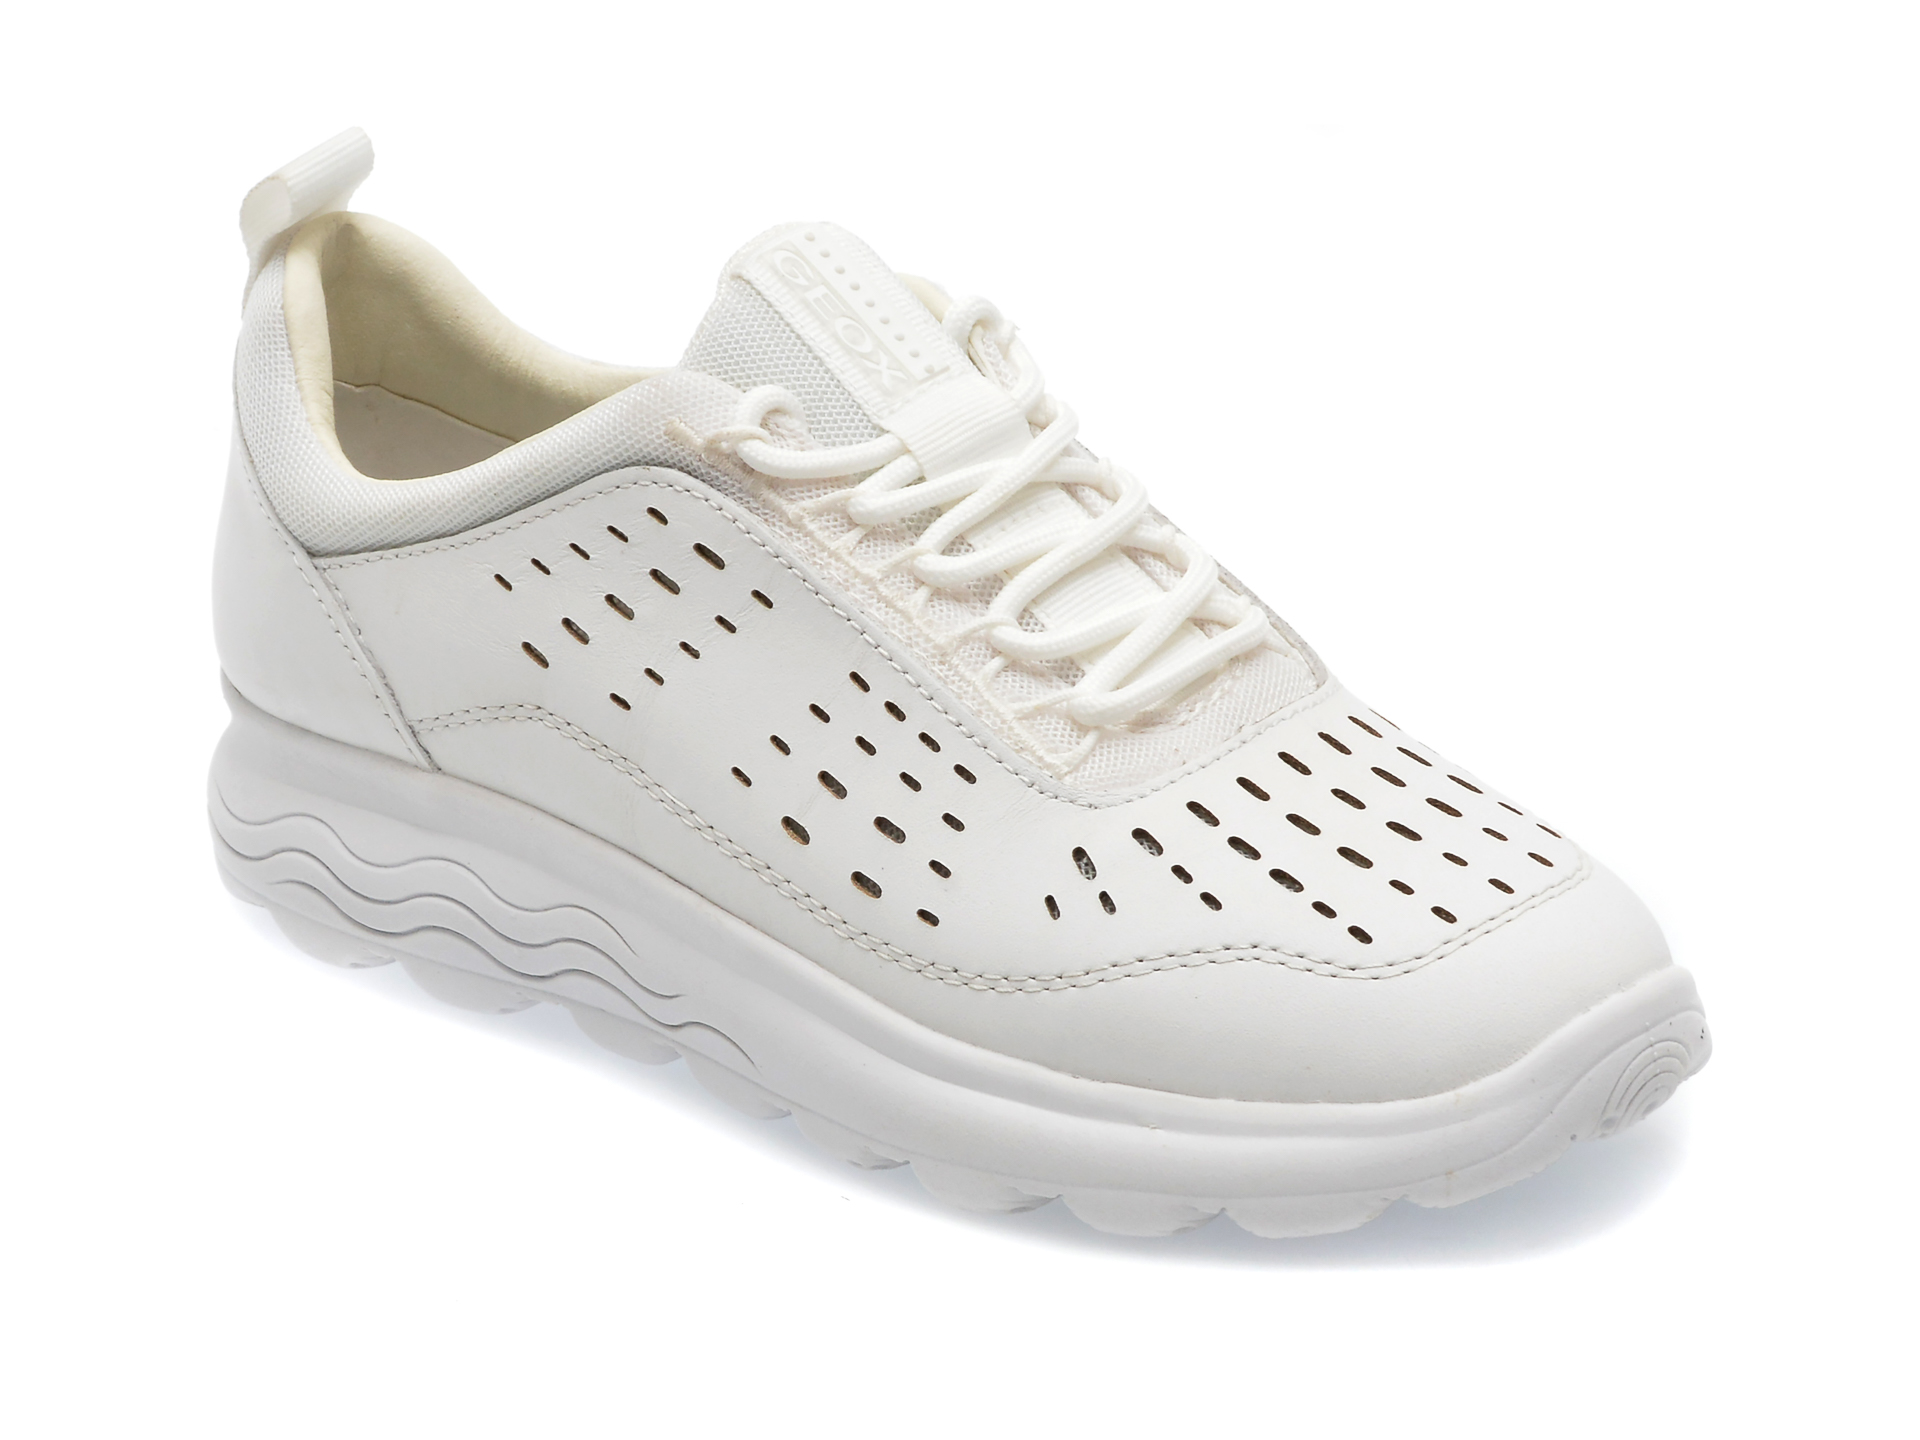 Pantofi GEOX albi, D35NUA, din piele naturala